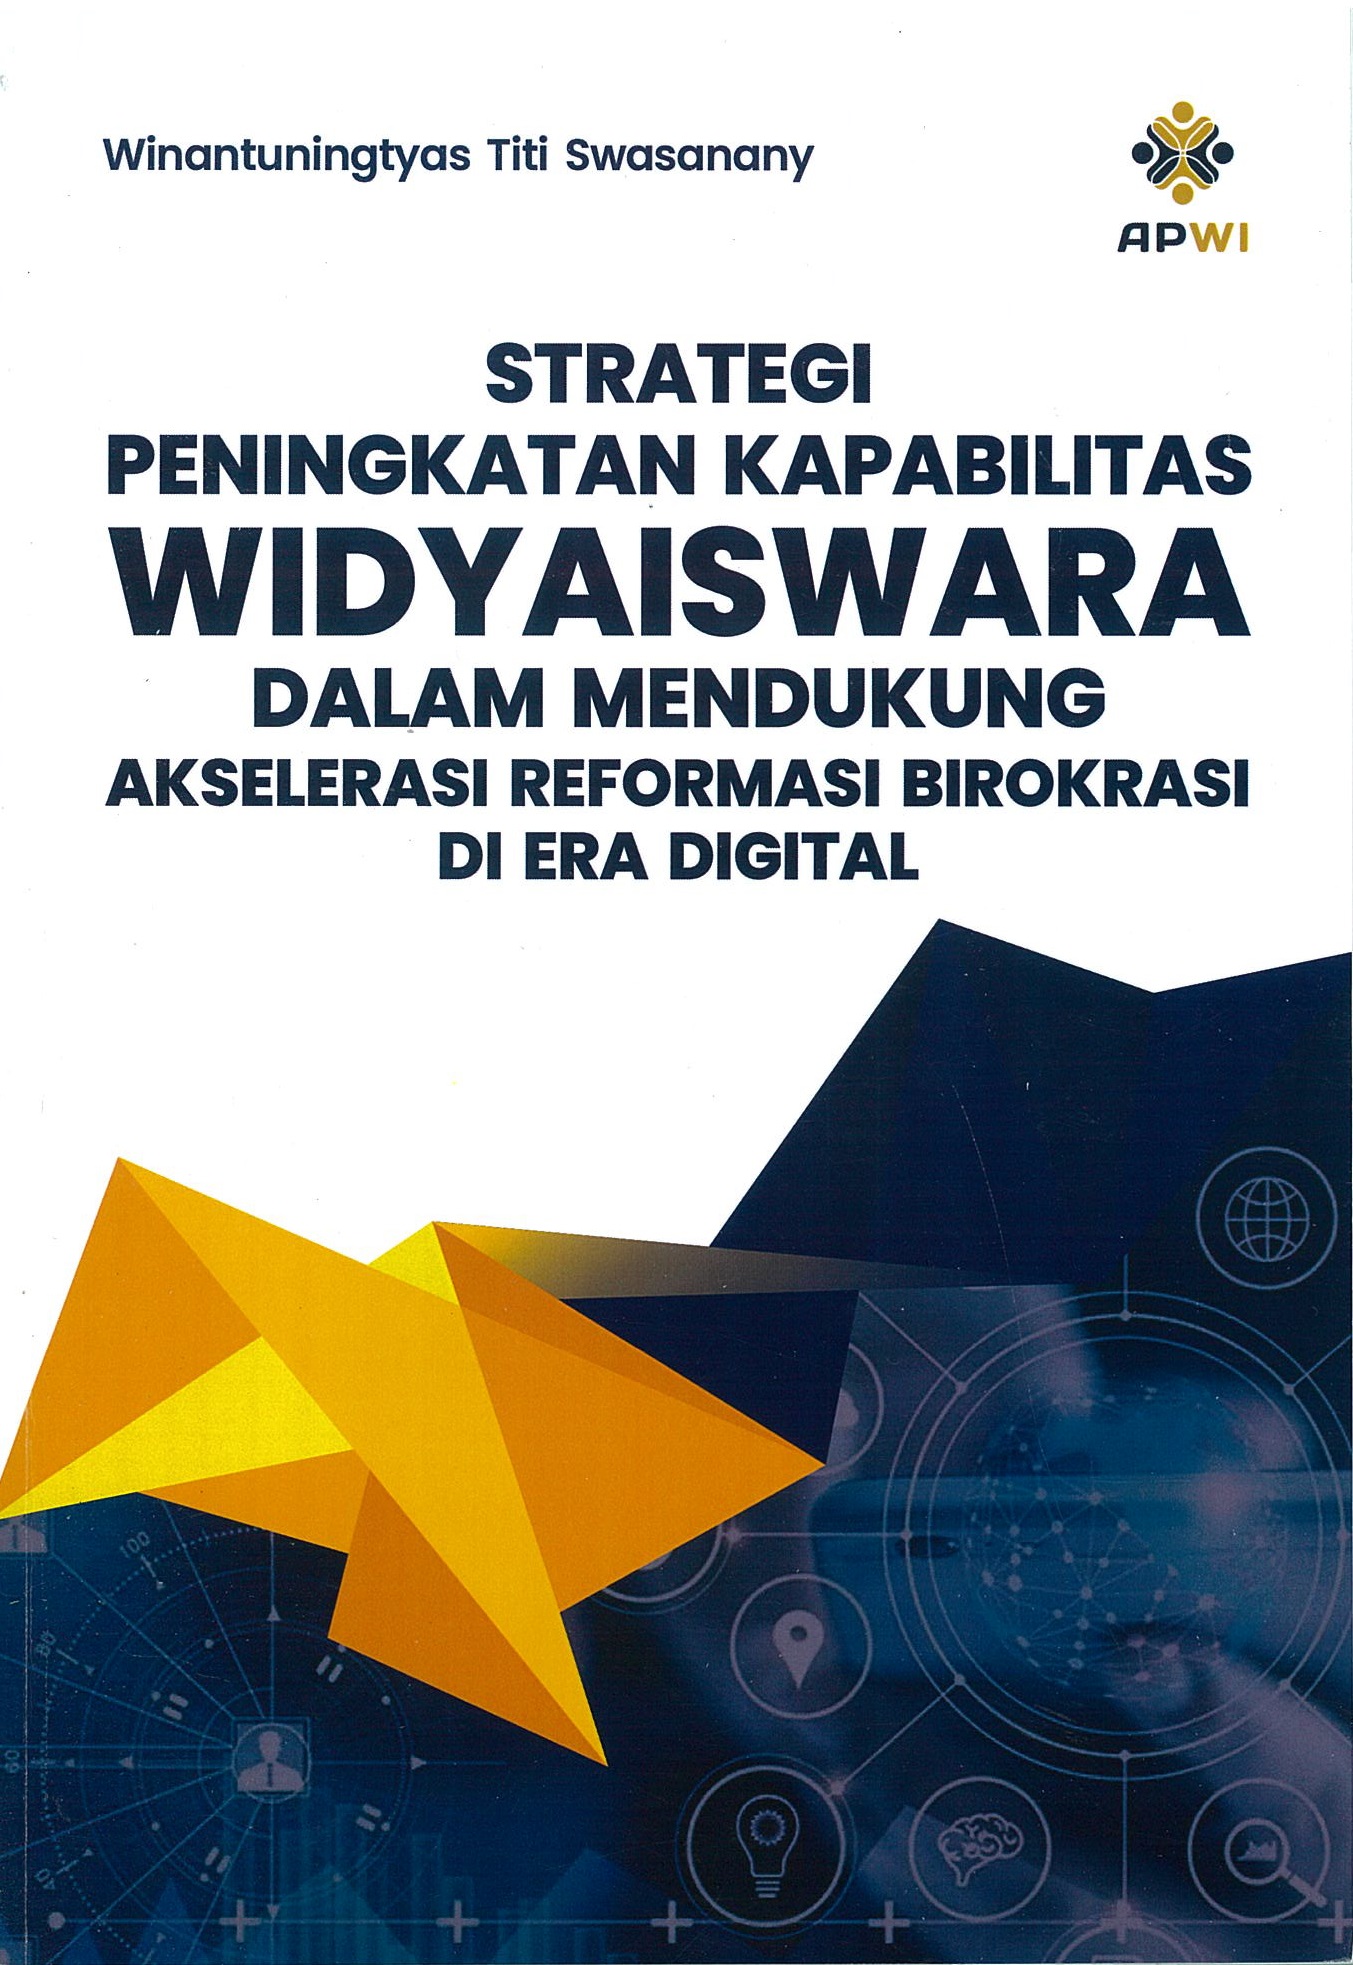 Strategi peningkatan kapabilitas widyaiswara dalam mendukung akselerasi reformasi birokrasi di era digital